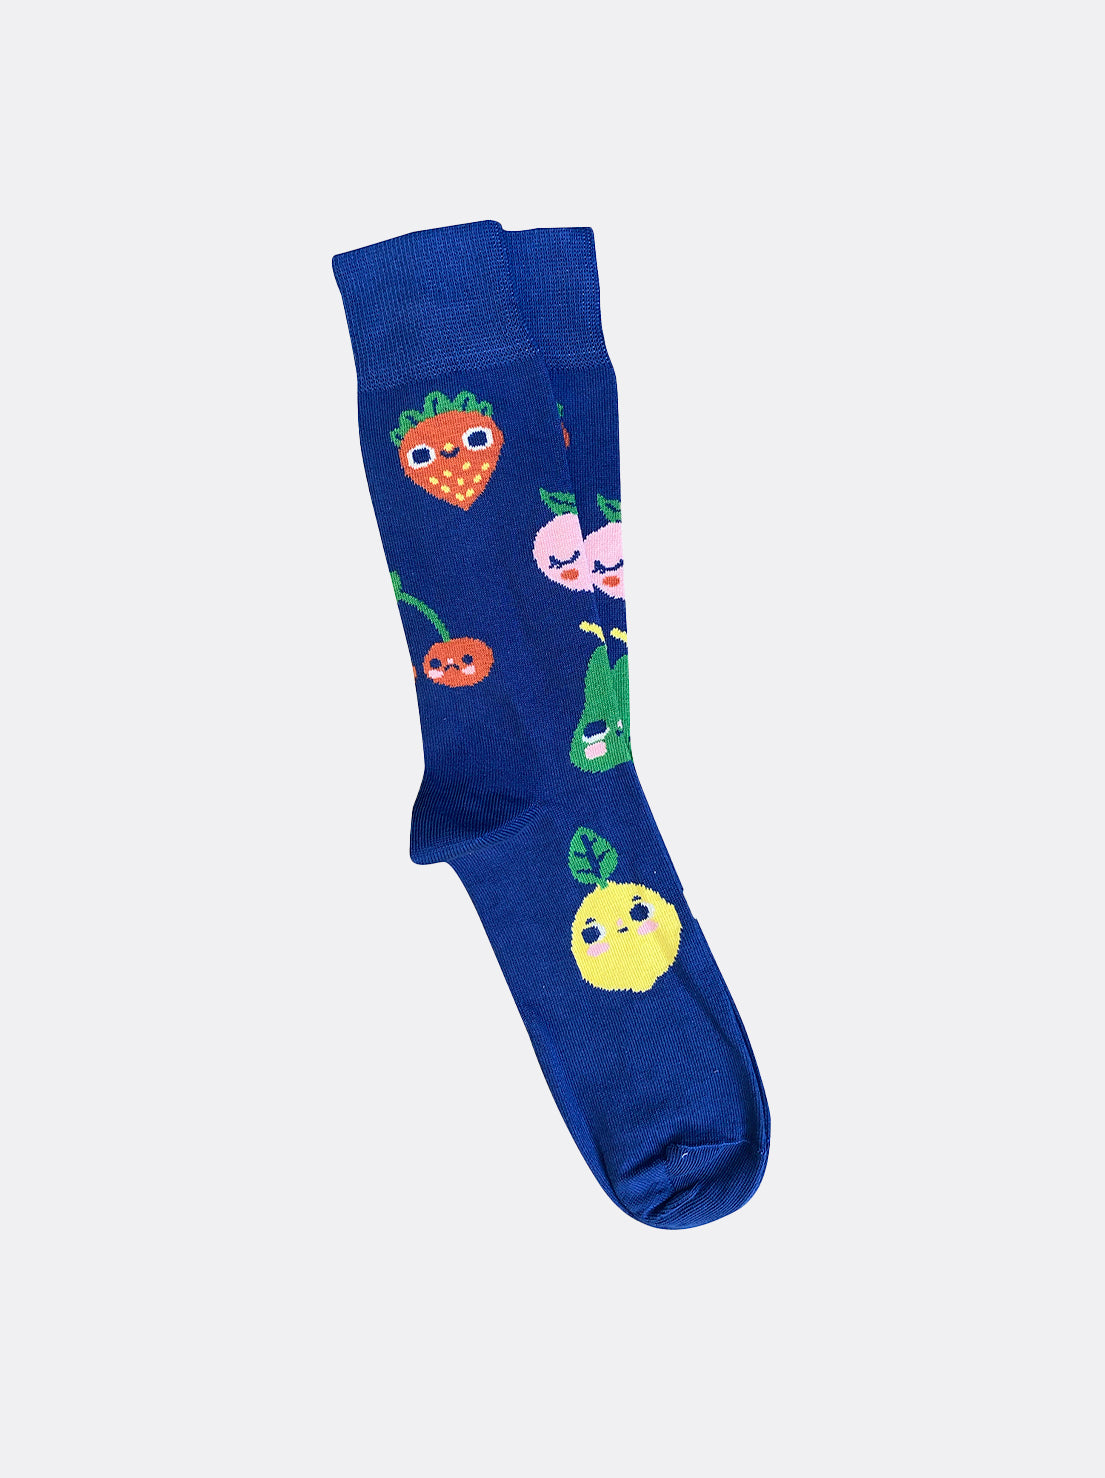 Tightology - Fruit Socks - Blue